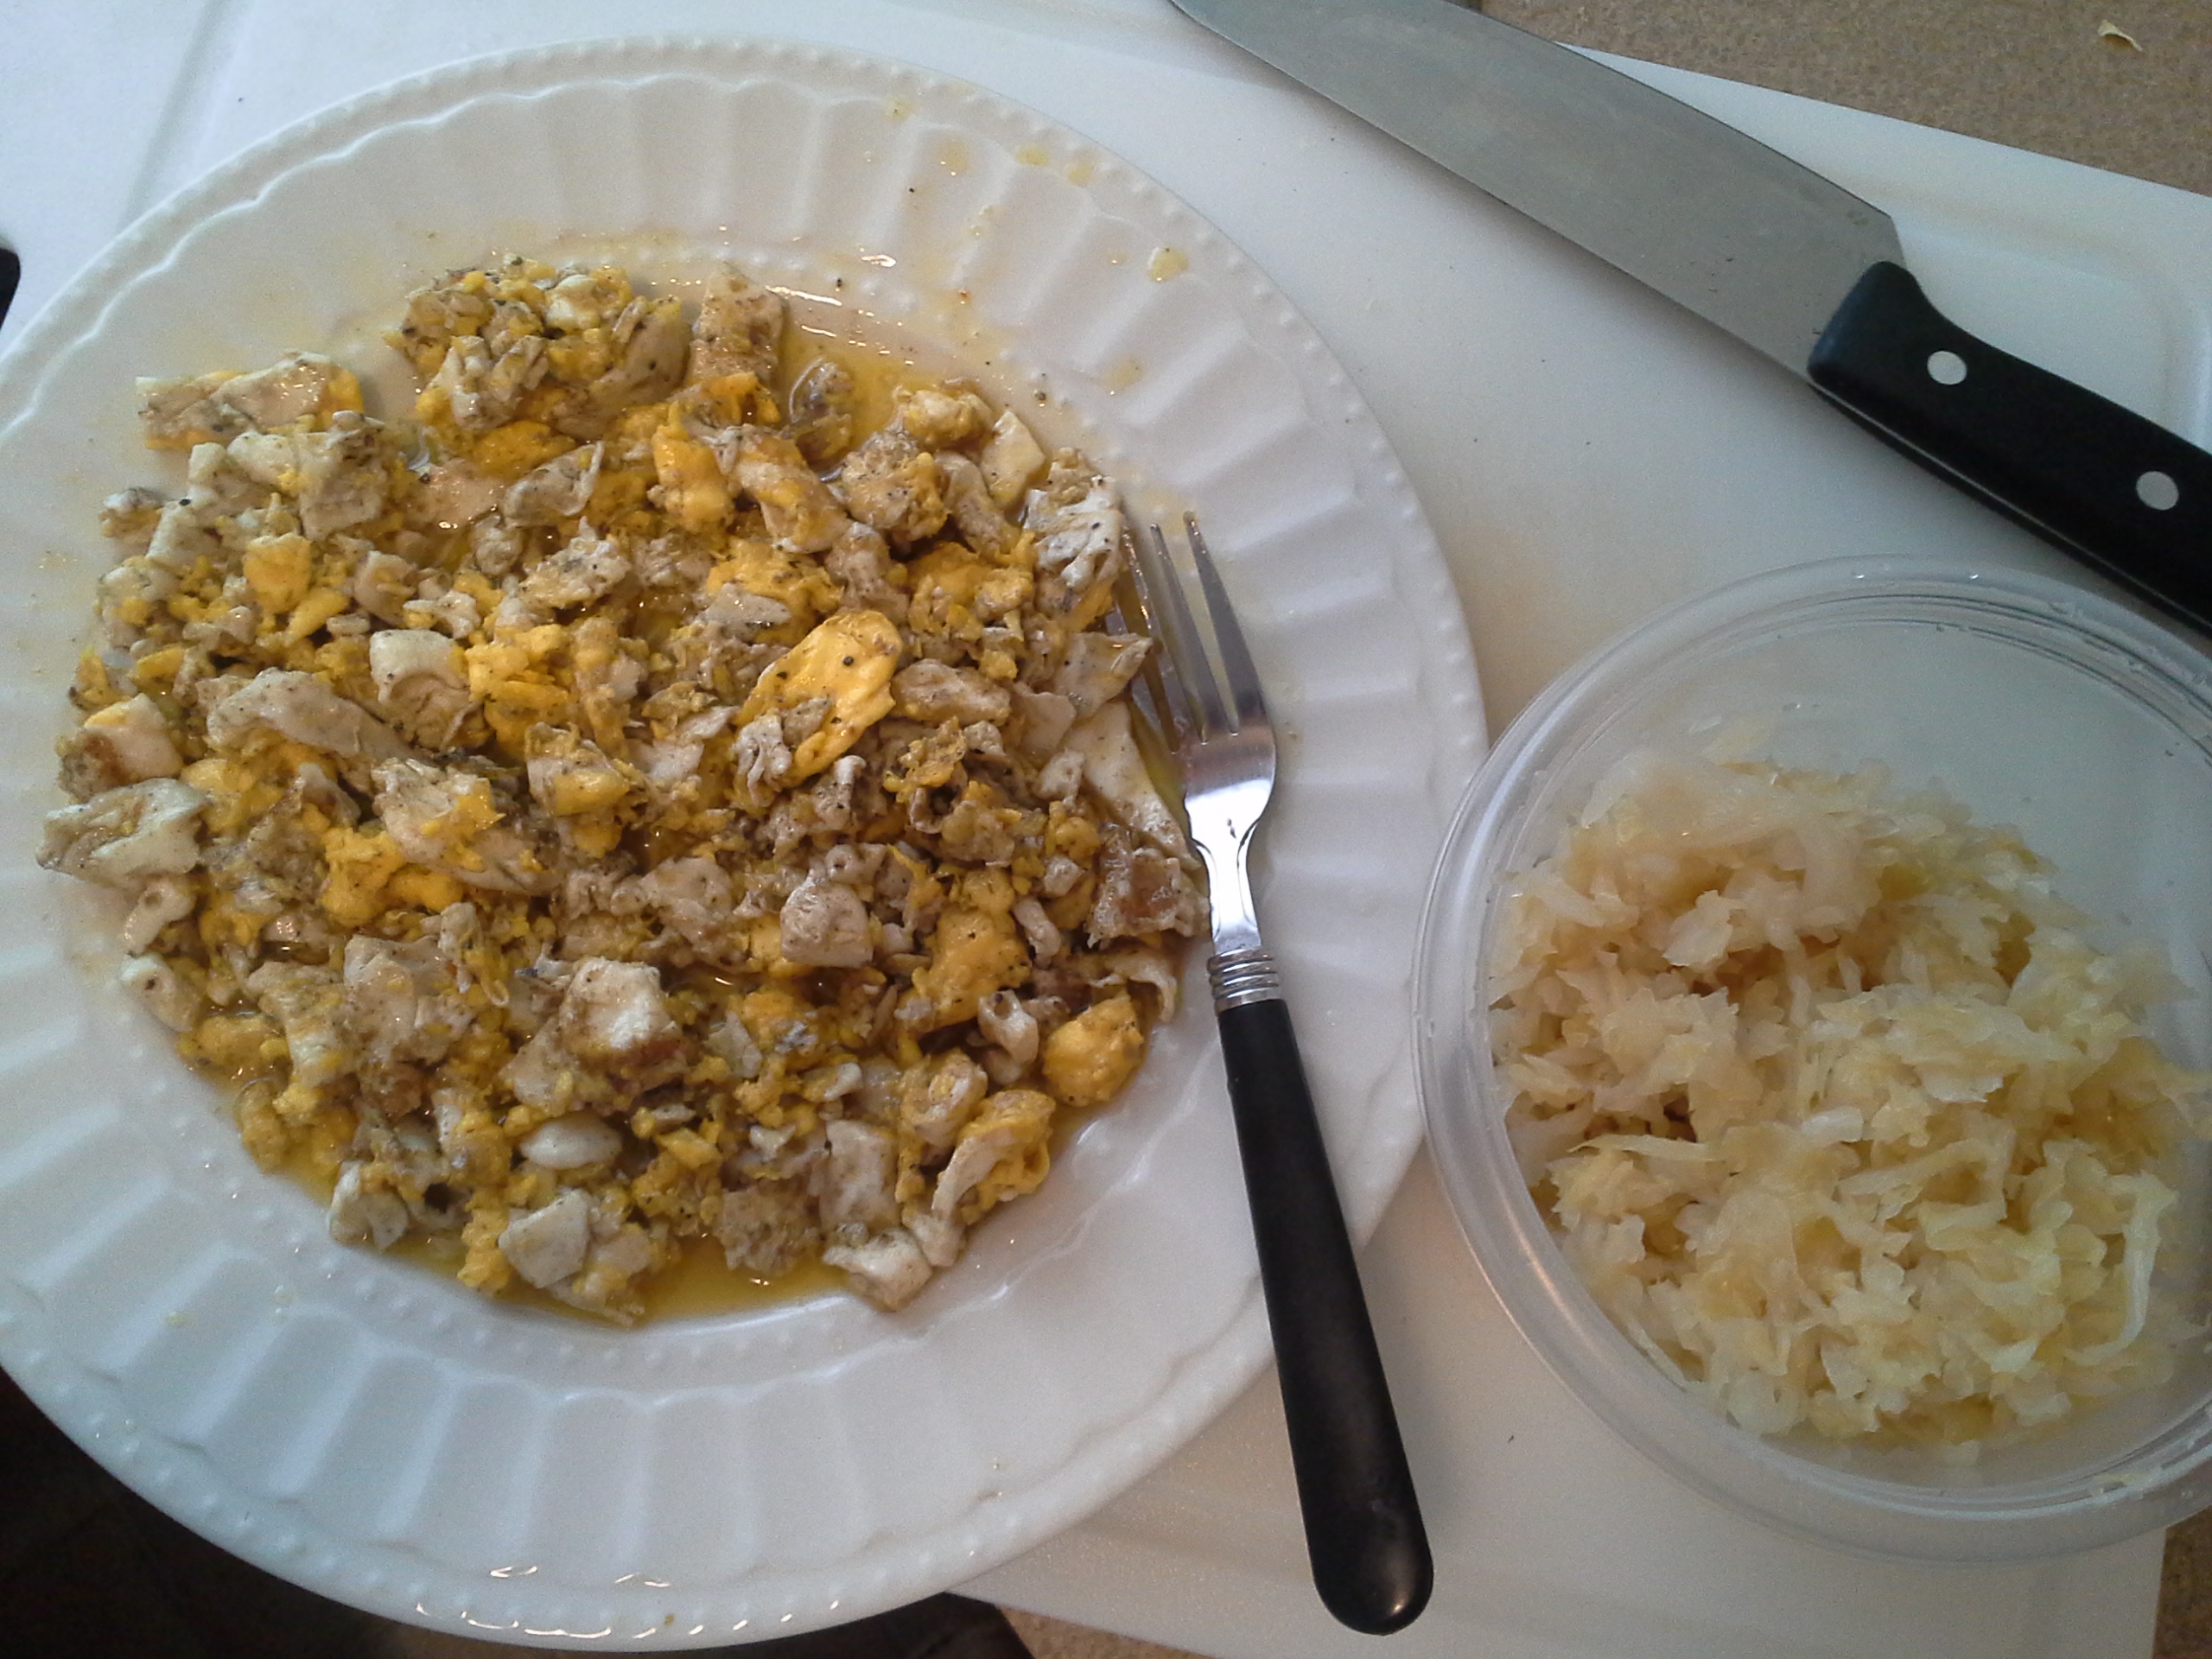 Breakfast: 11:55 a.m. | 4 eggs, sauerkraut, Kerrygold butter, herbs & spices